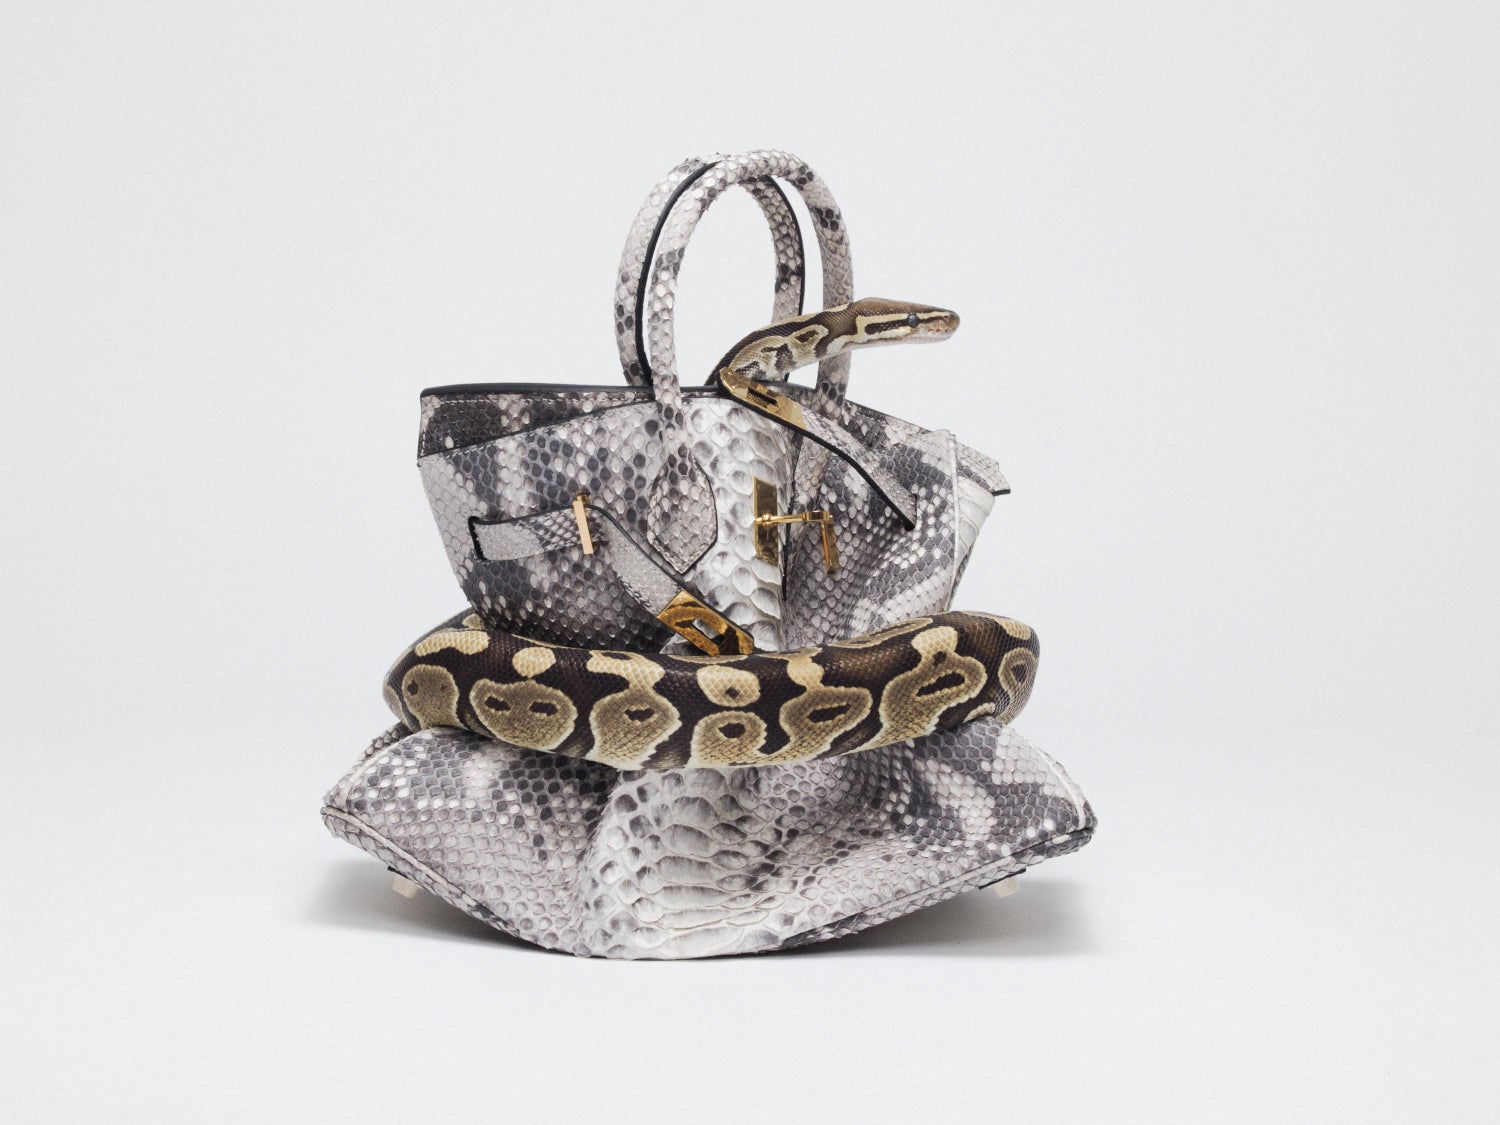 Hermes Python Bag - 18 For Sale on 1stDibs | hermes python bag price, python  hermes, birkin python price